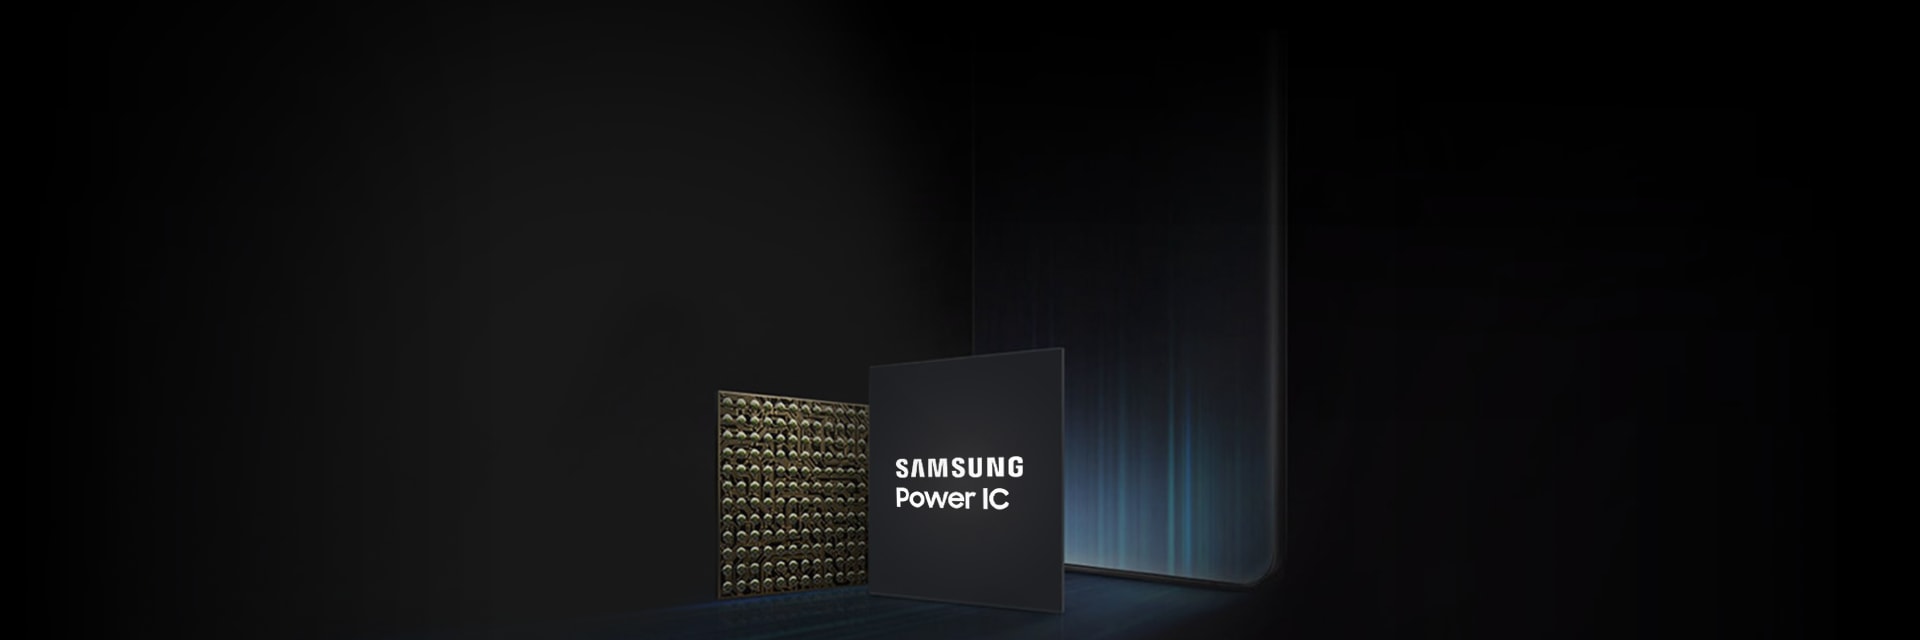 스마트 폰 이미지에 대한 삼성 Power IC의 설명 이미지